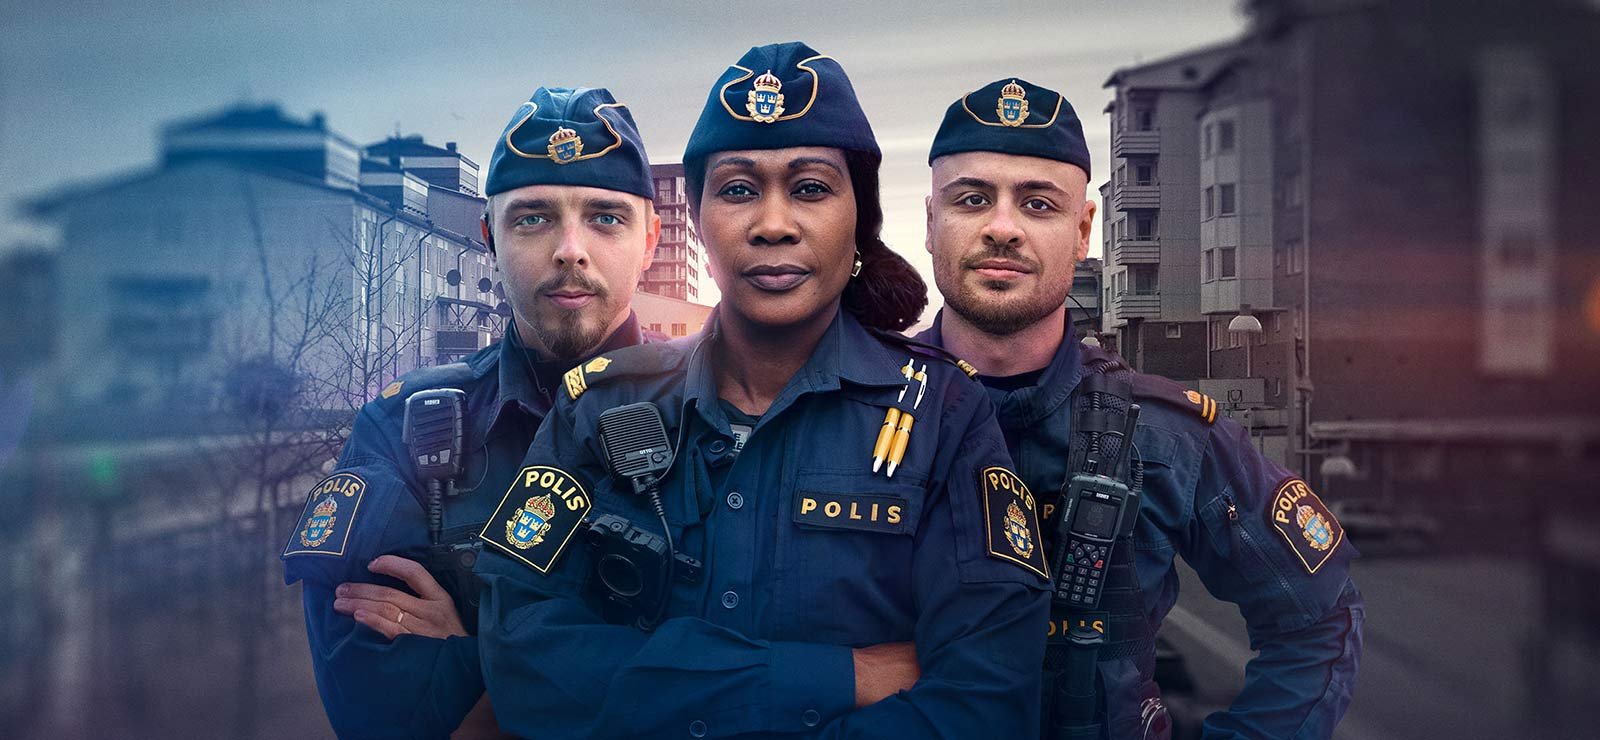 På TV i kväll: "Poliserna i våldsvågen" – kämpar mot Stockholms gängkriminella